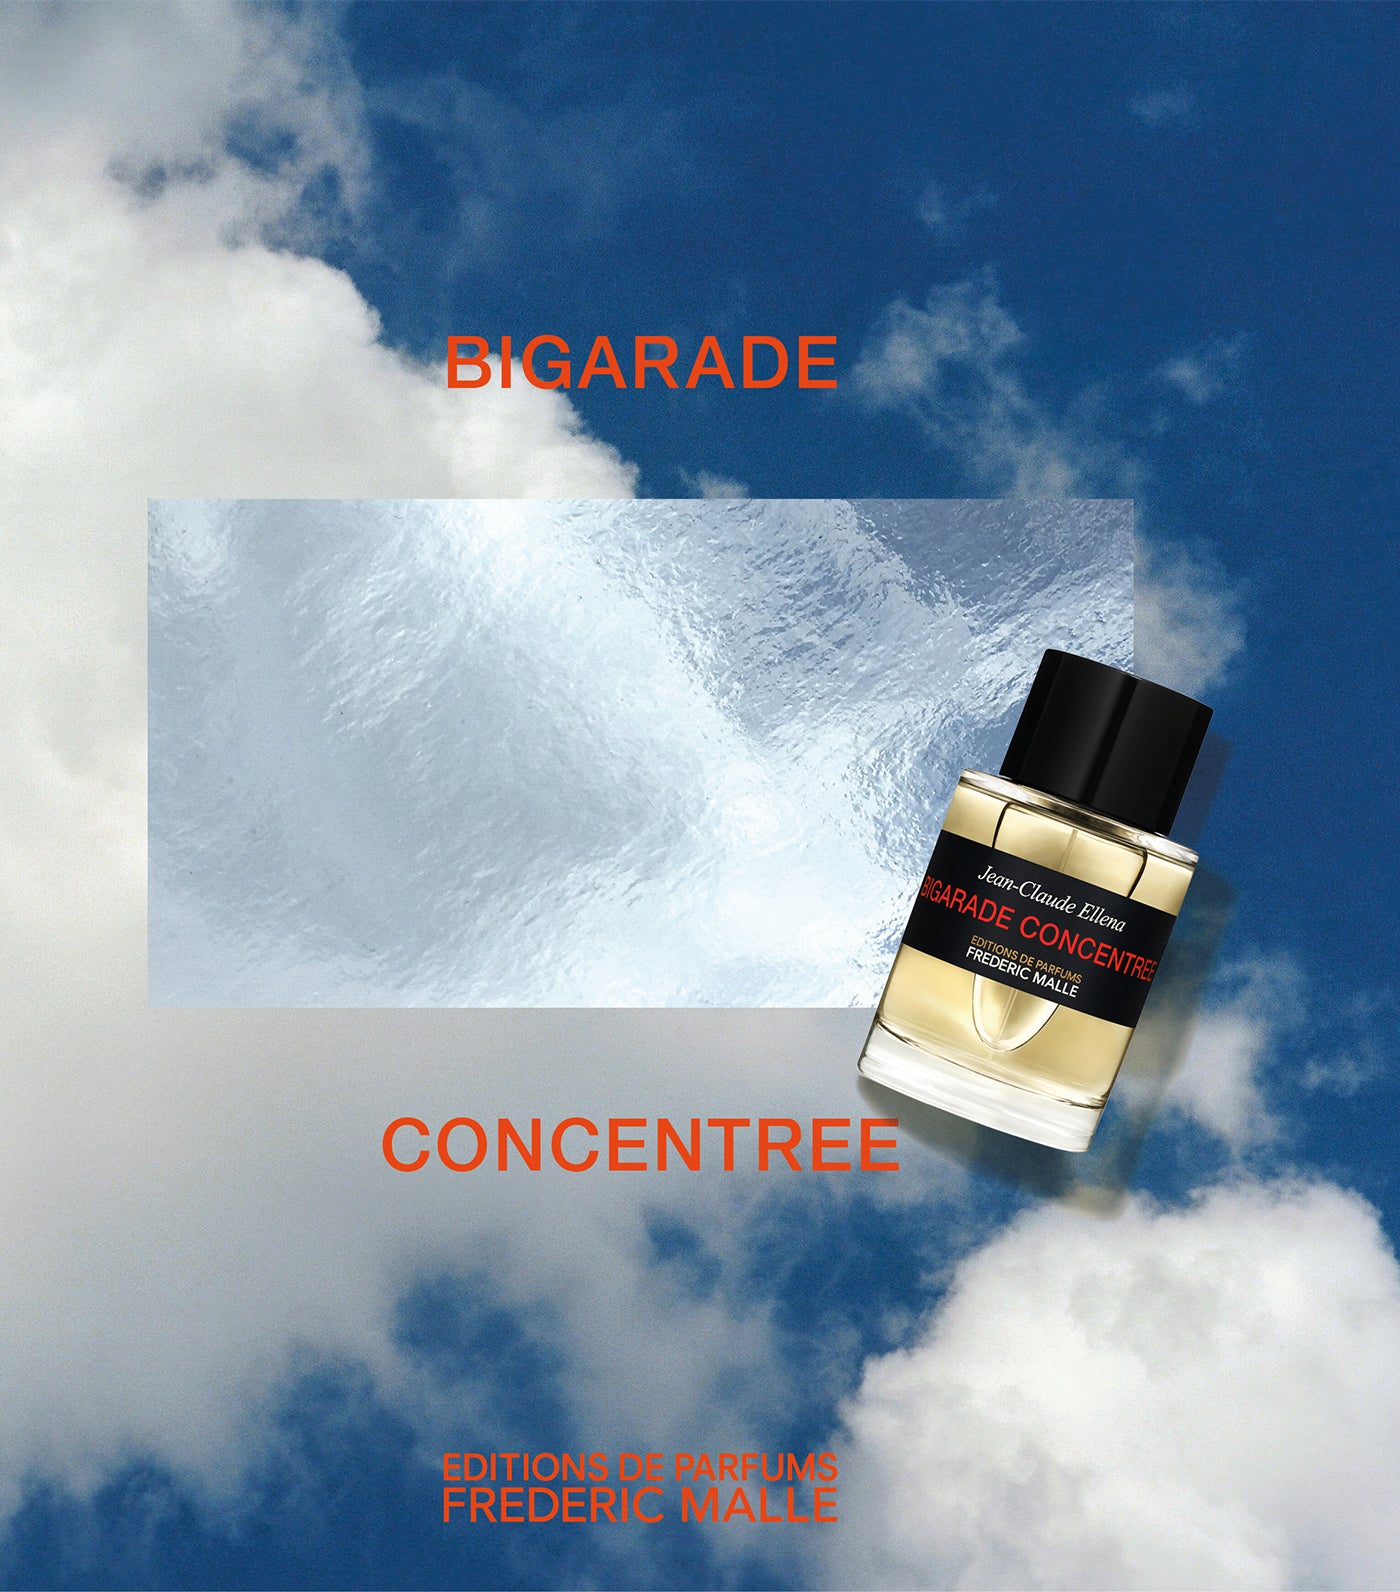 Bigarade Concentree Cologne by Jean-Claude Ellena